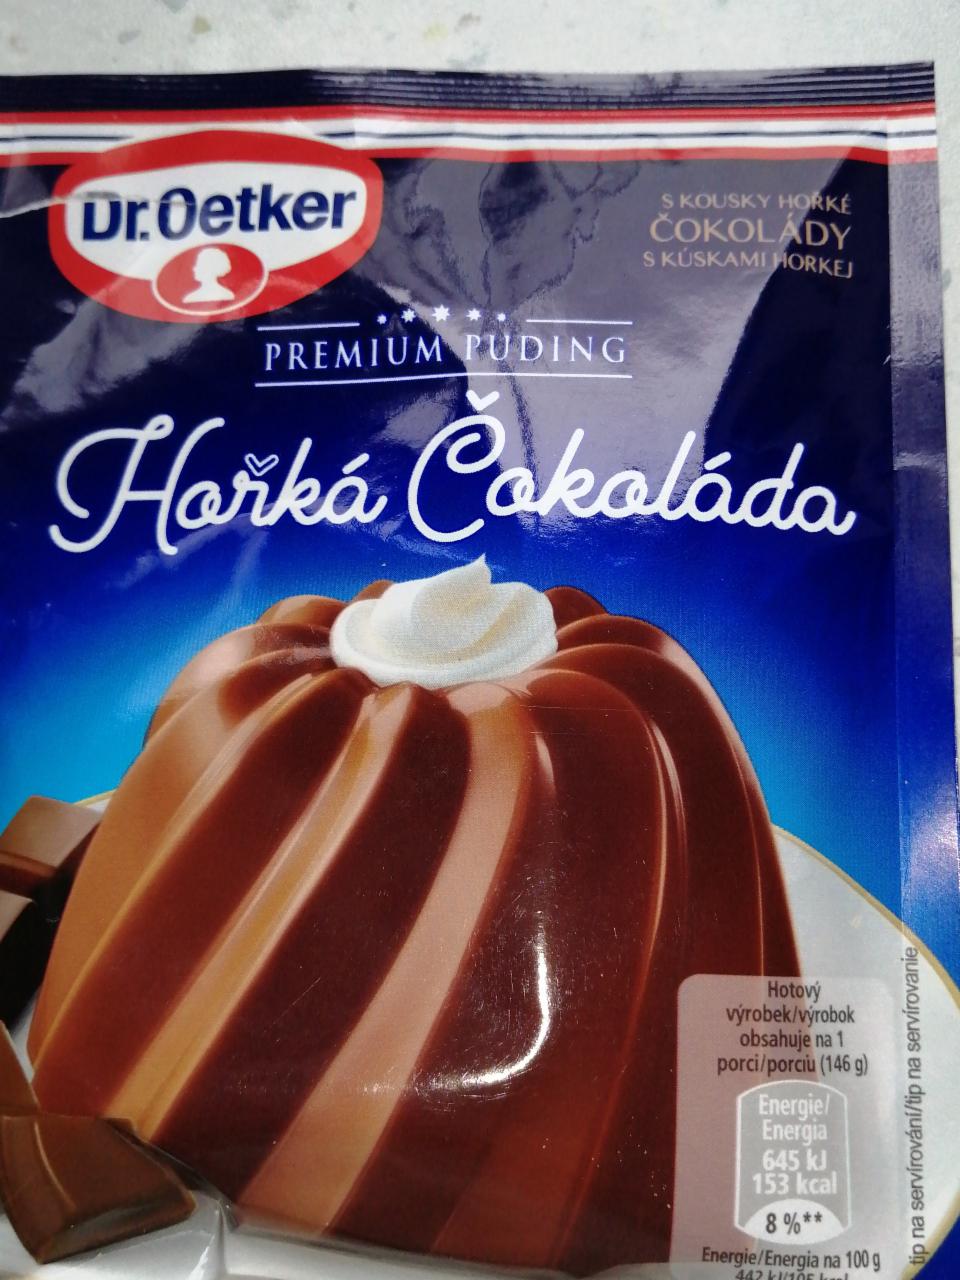 Fotografie - Premium puding Hořká čokoláda Dr.Oetker hotový výrobek